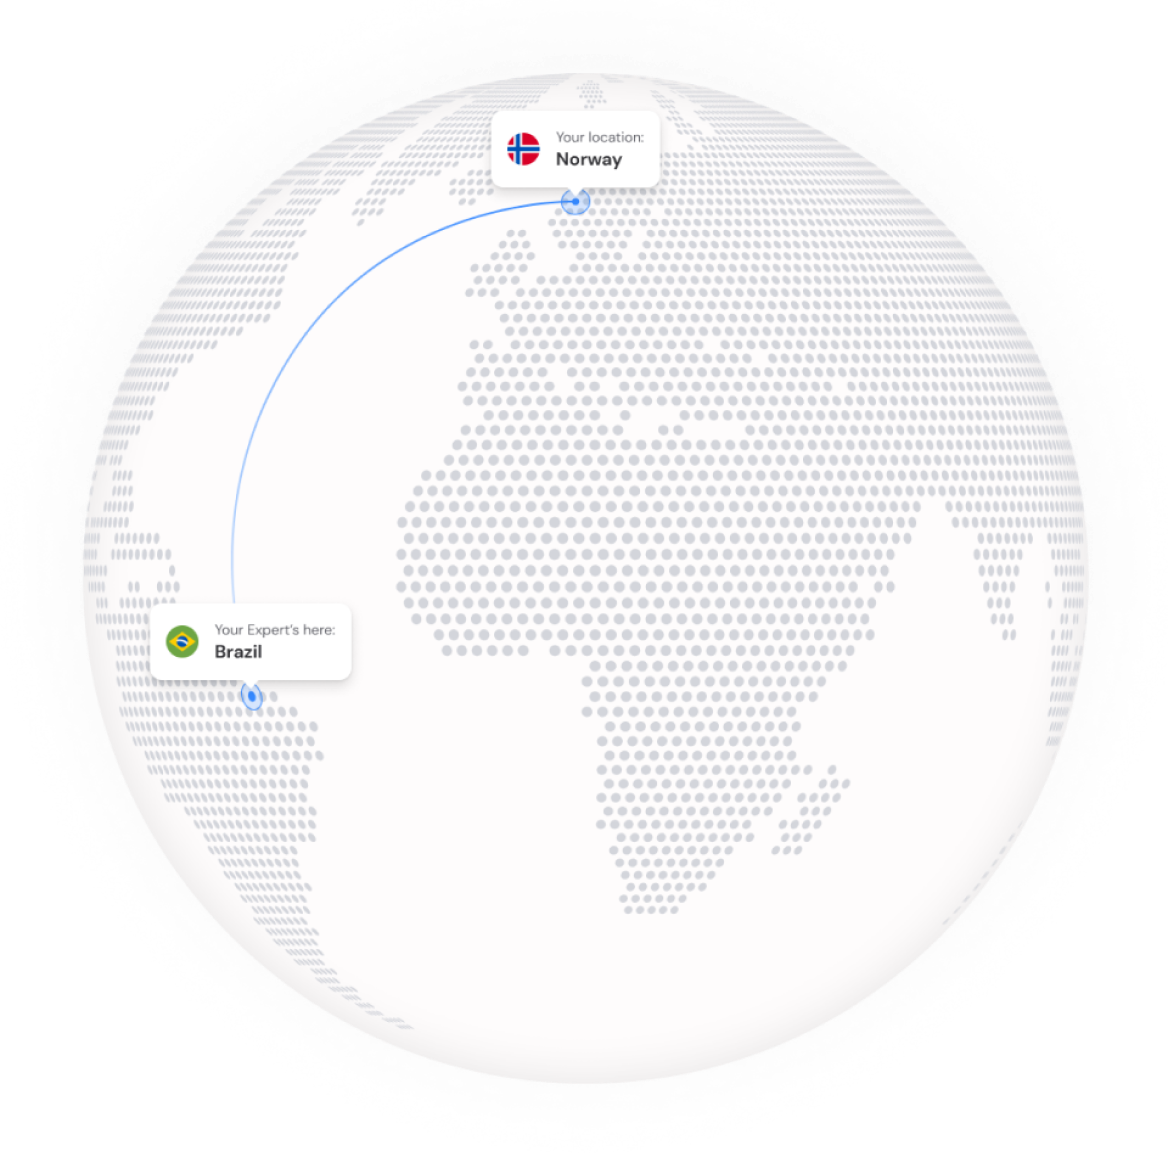 Visualização de conectividade global e suporte